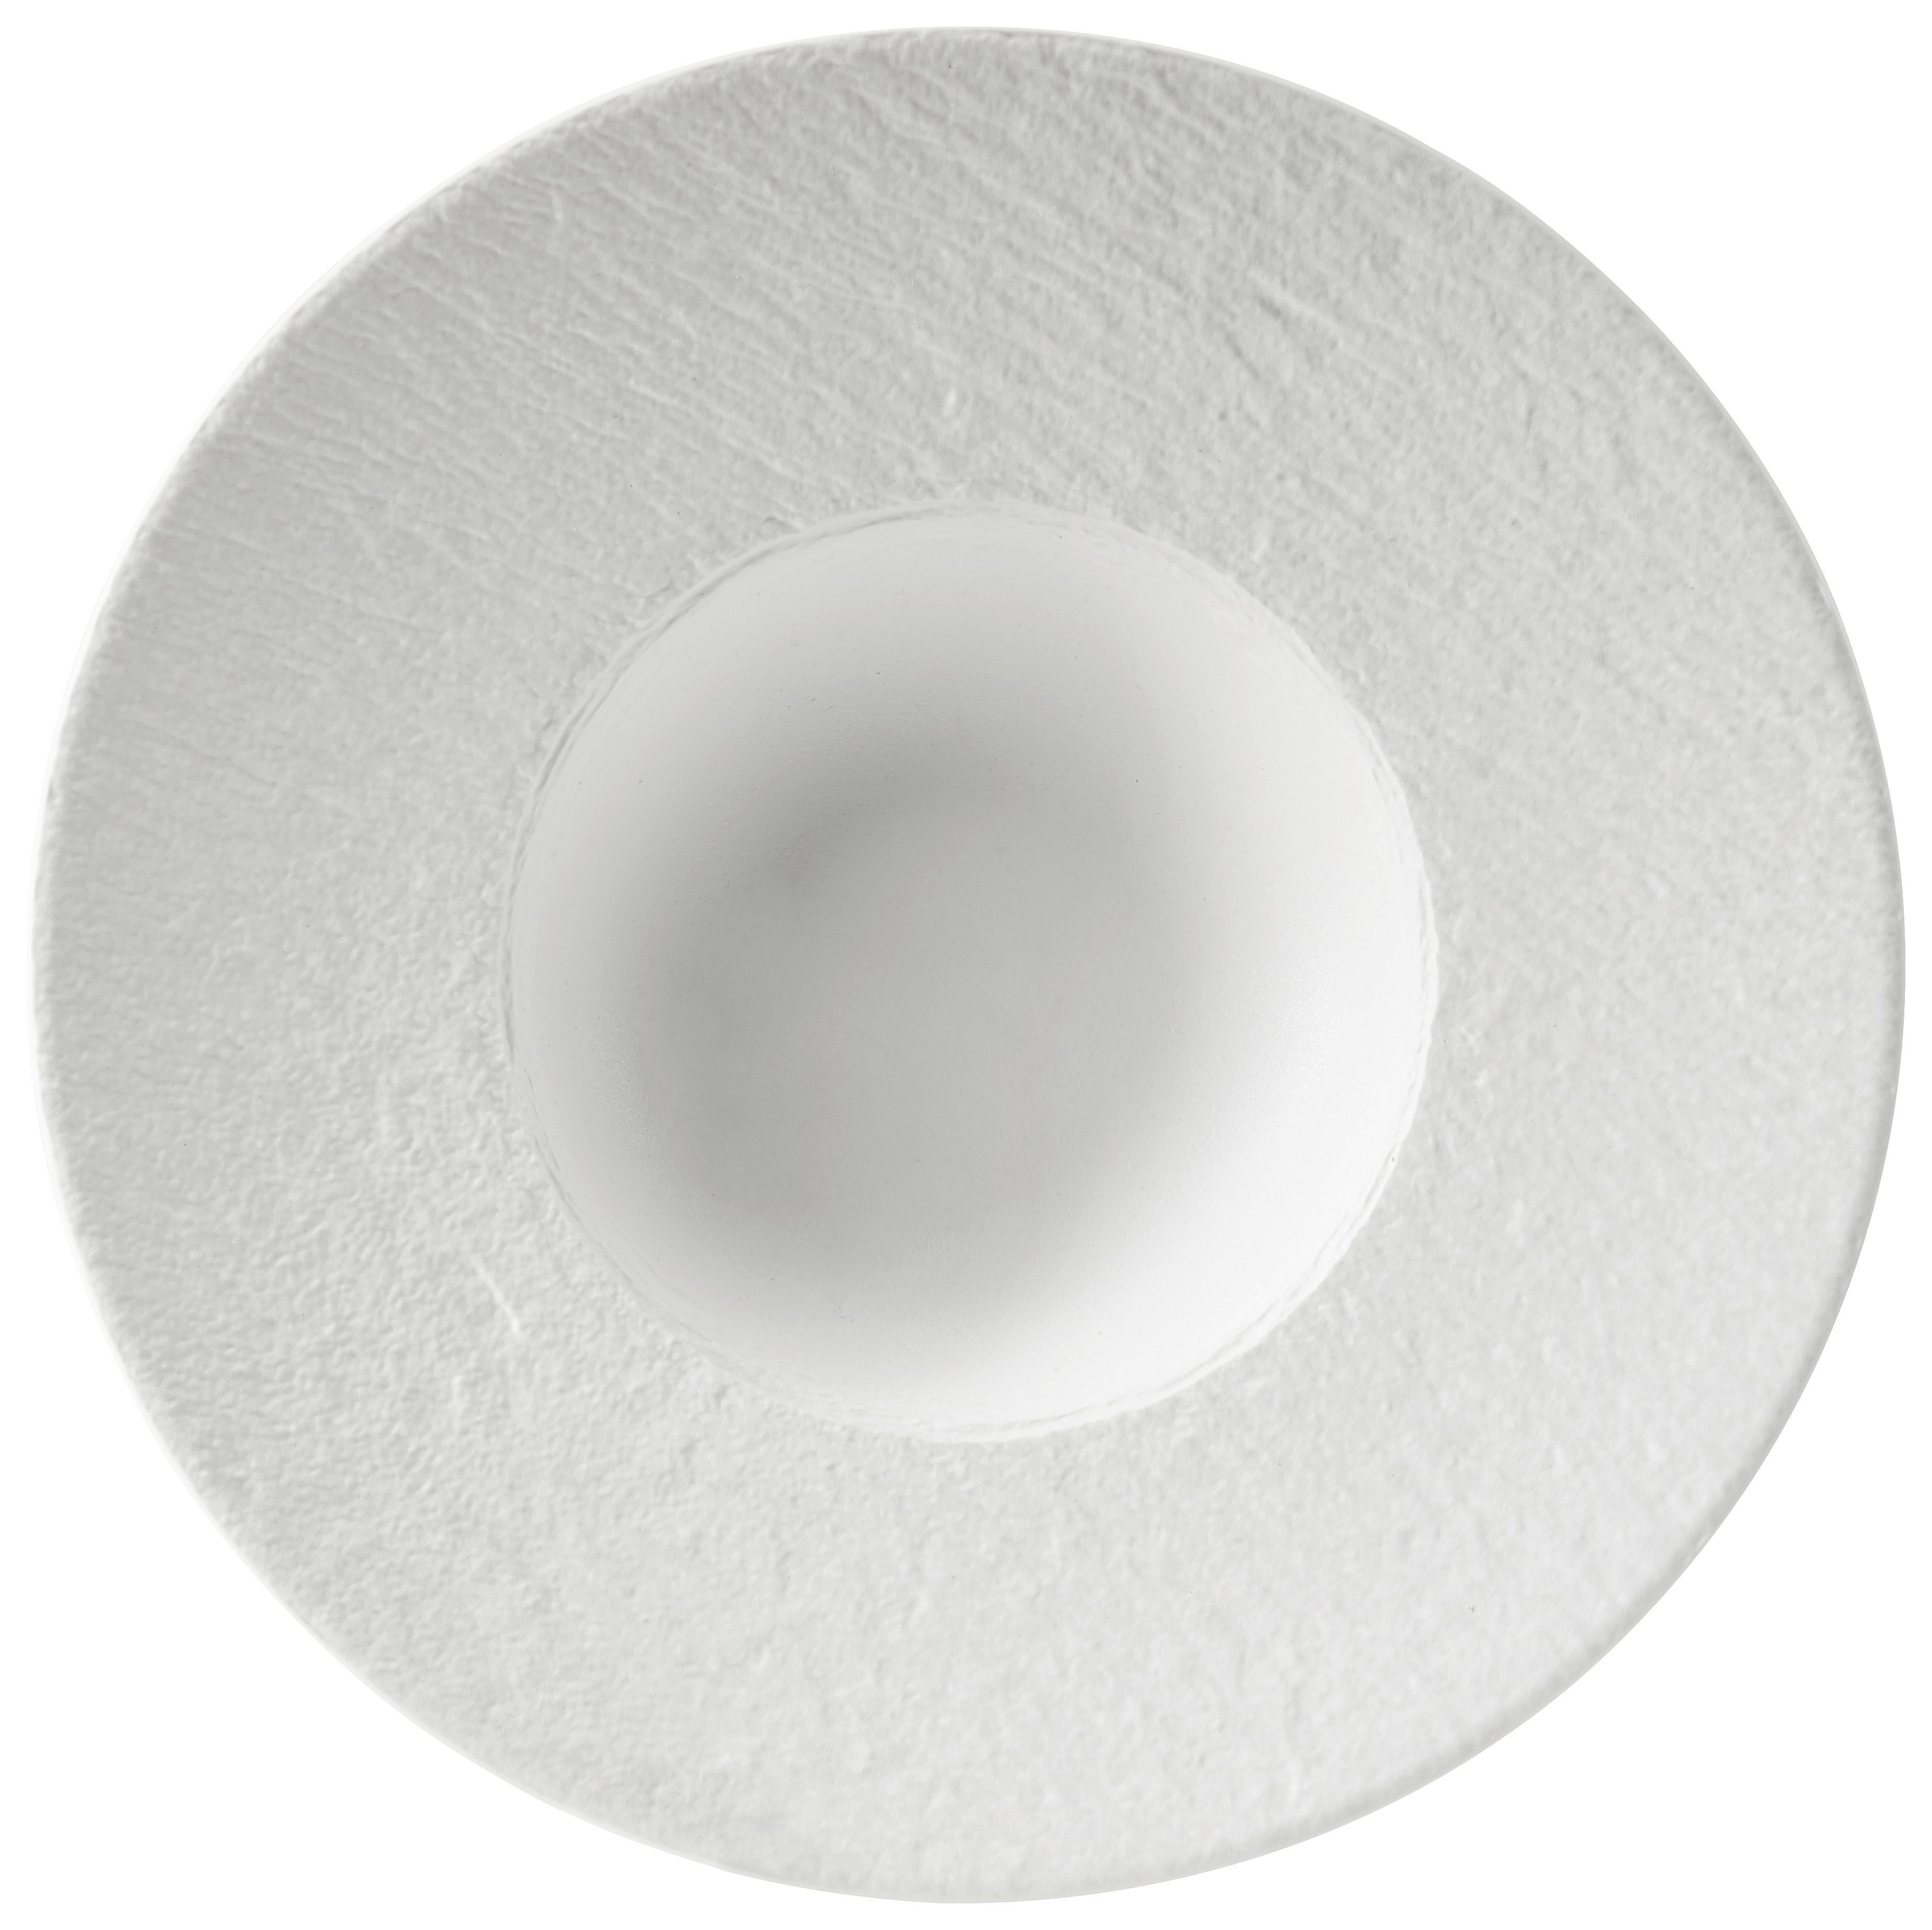 PASTATALLRIK   - vit, Design, keramik (29cm) - Villeroy & Boch